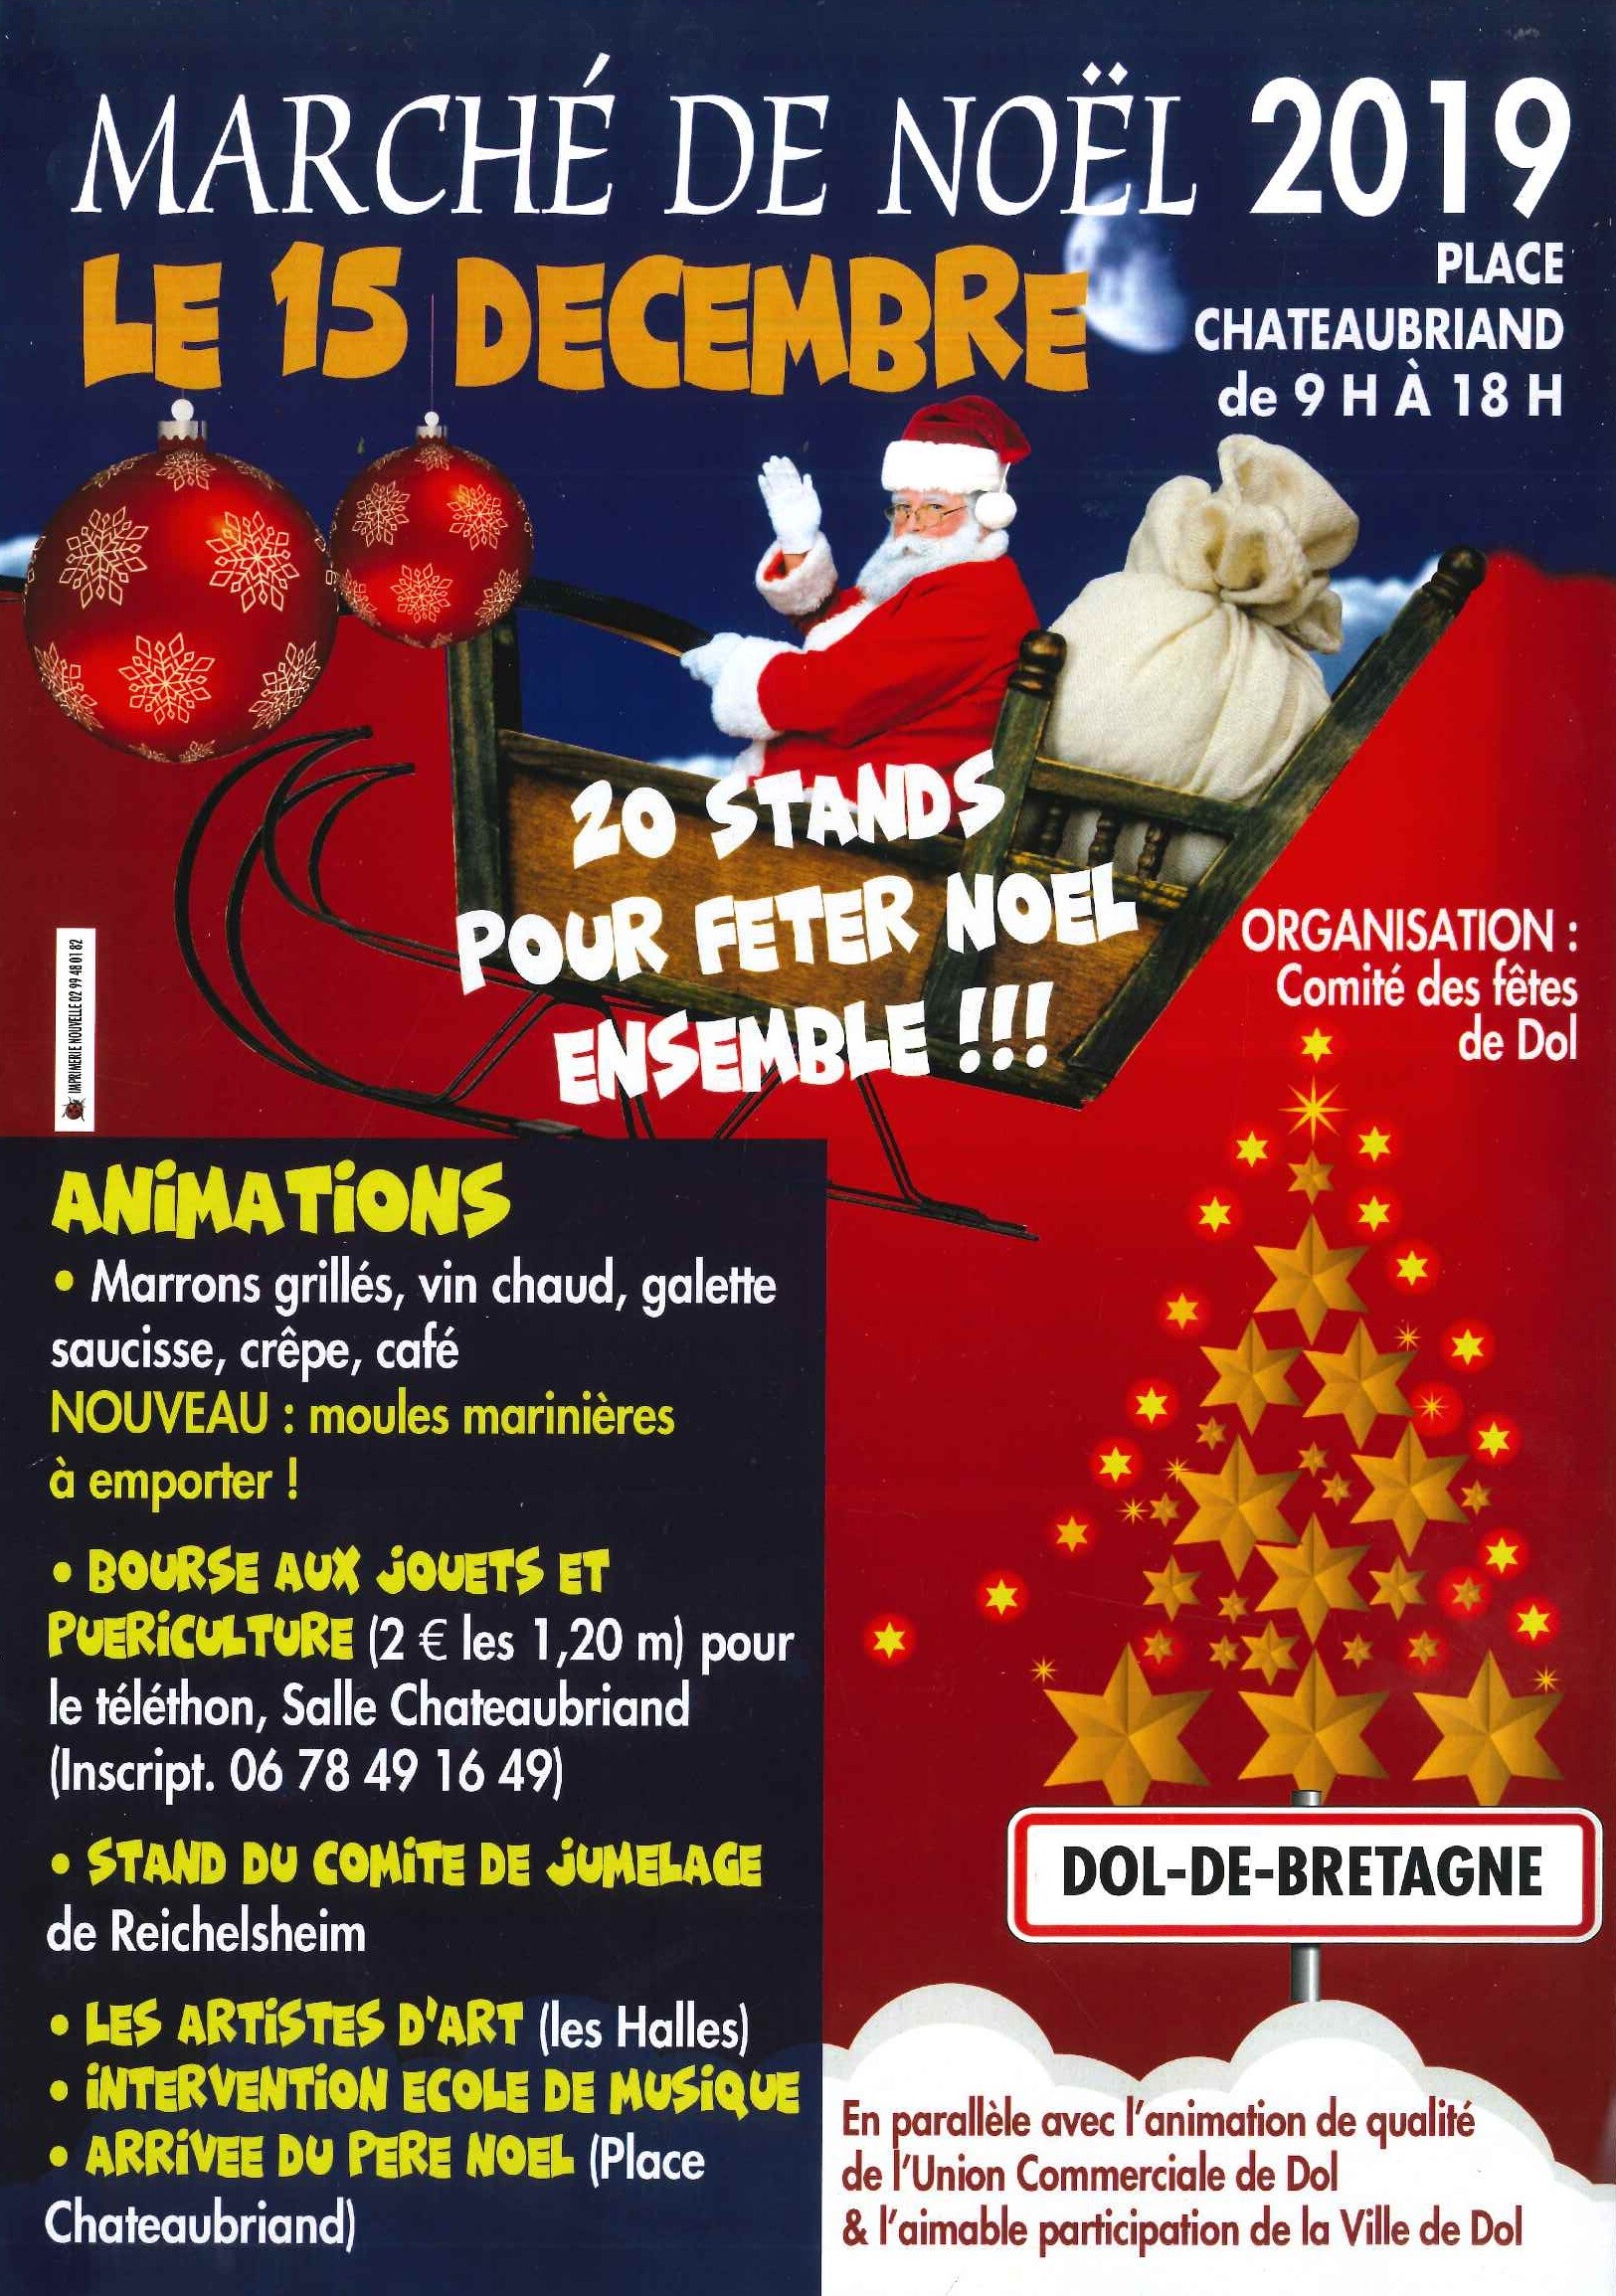 Marché de Noël de Dol de Bretagne